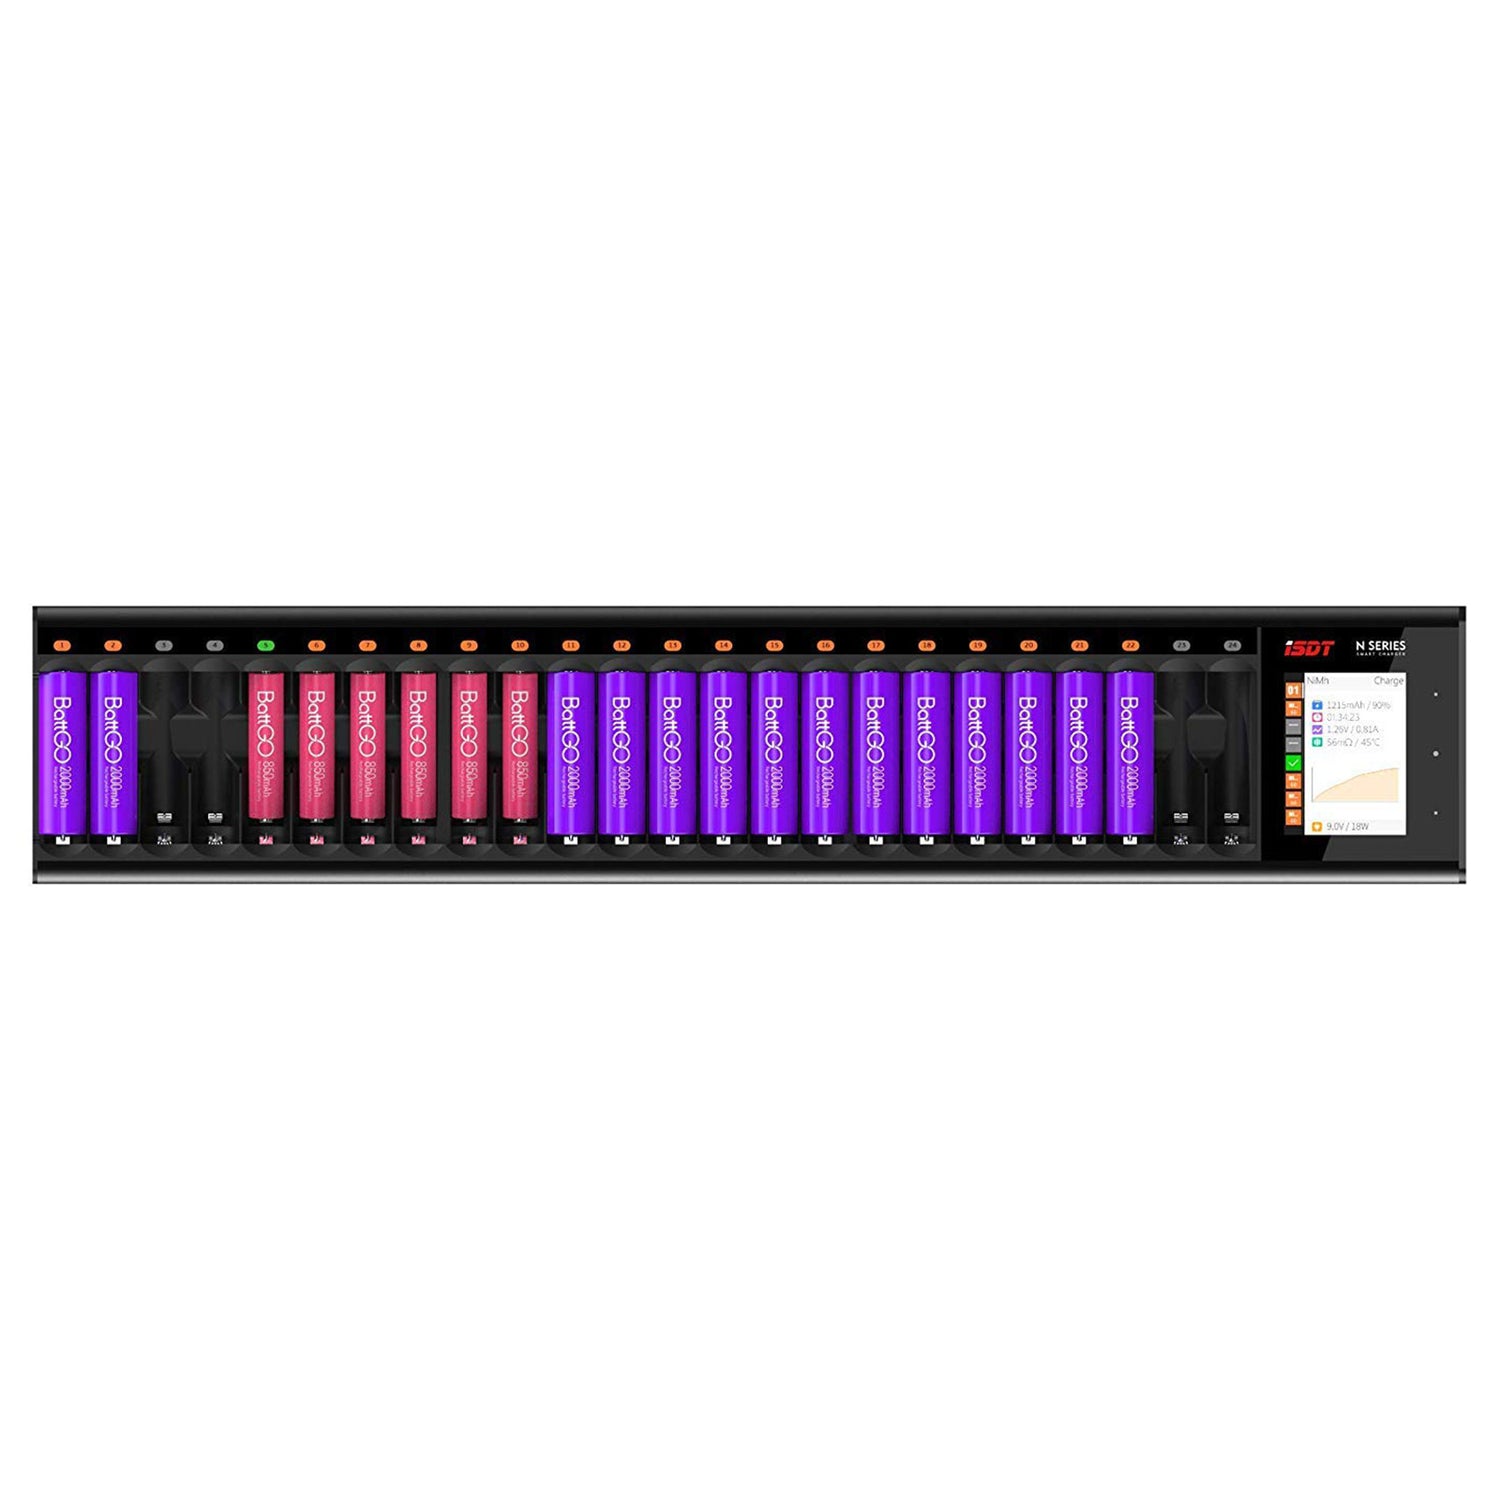 N24 LCD 24-SLOT BATTERY LAZARE FIR RACHARGHle Batterien, 48W Kampf fir AA / AAA Batterien